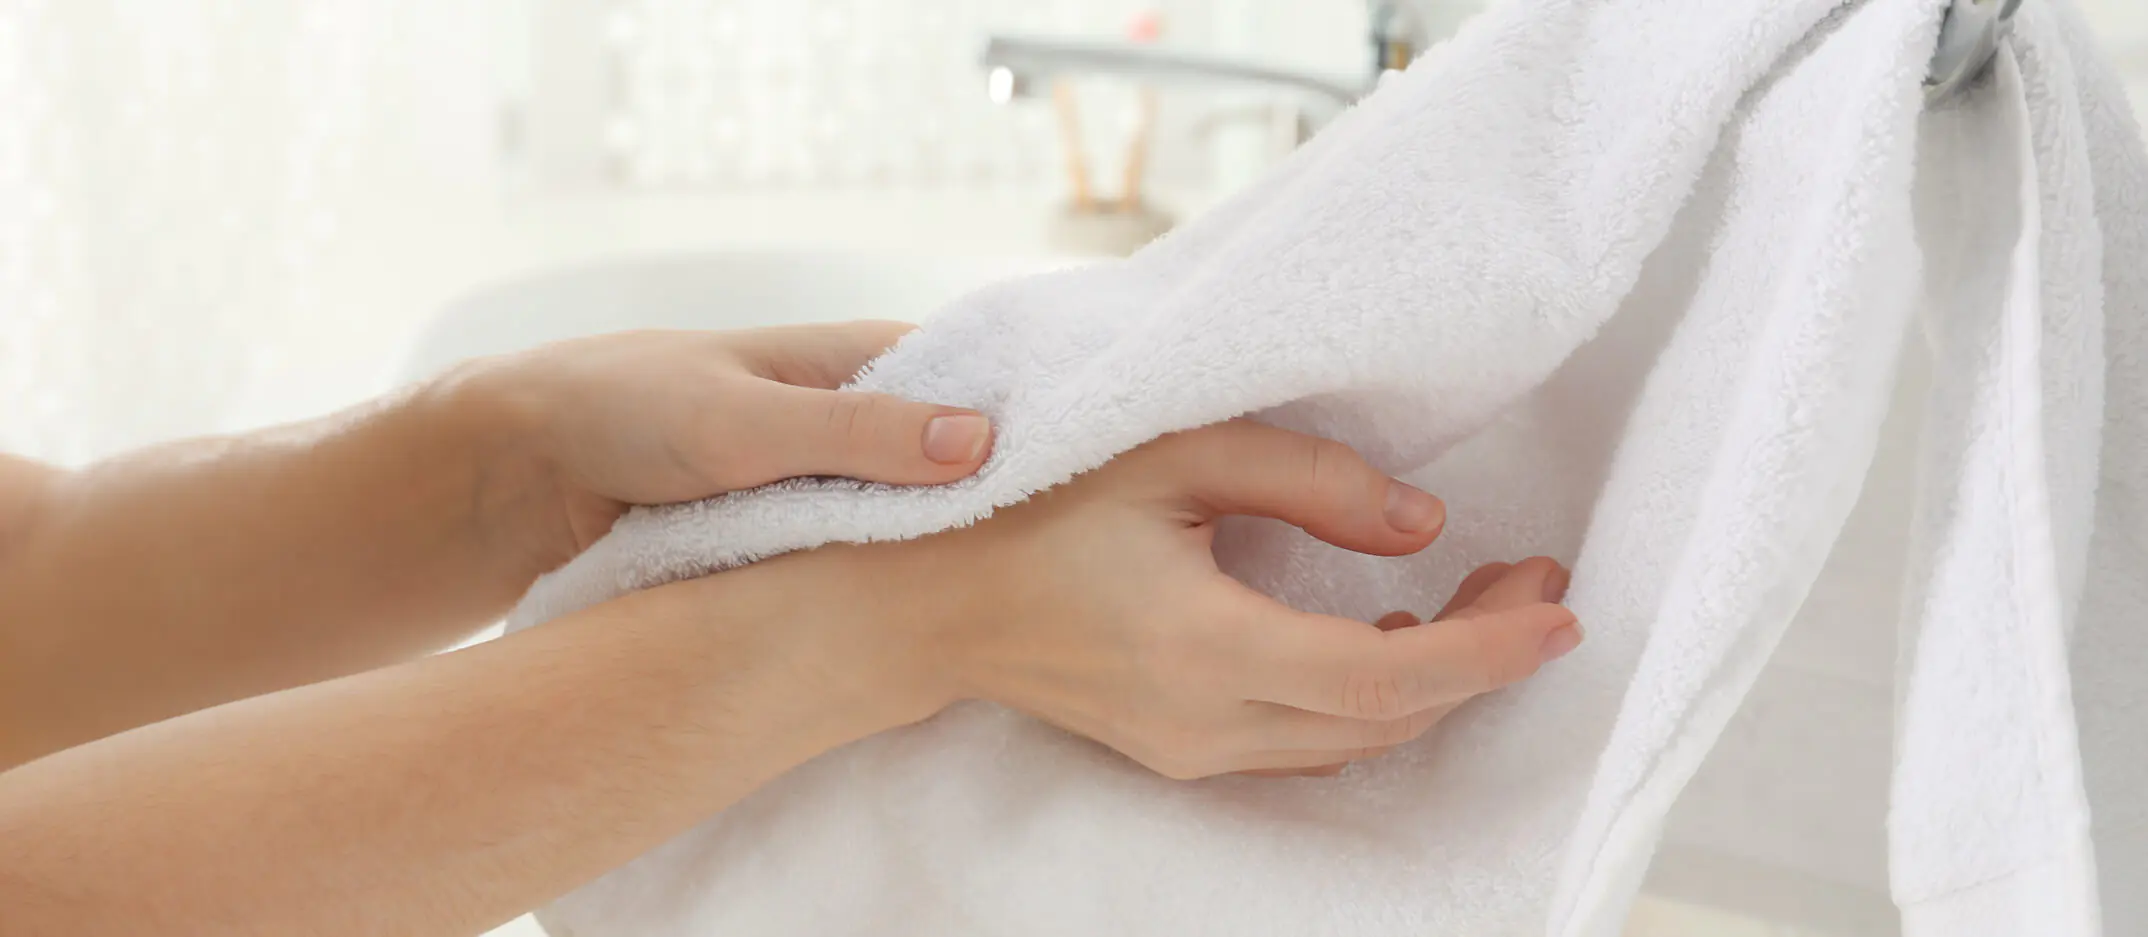 Как правильно сушить руки после мытья?